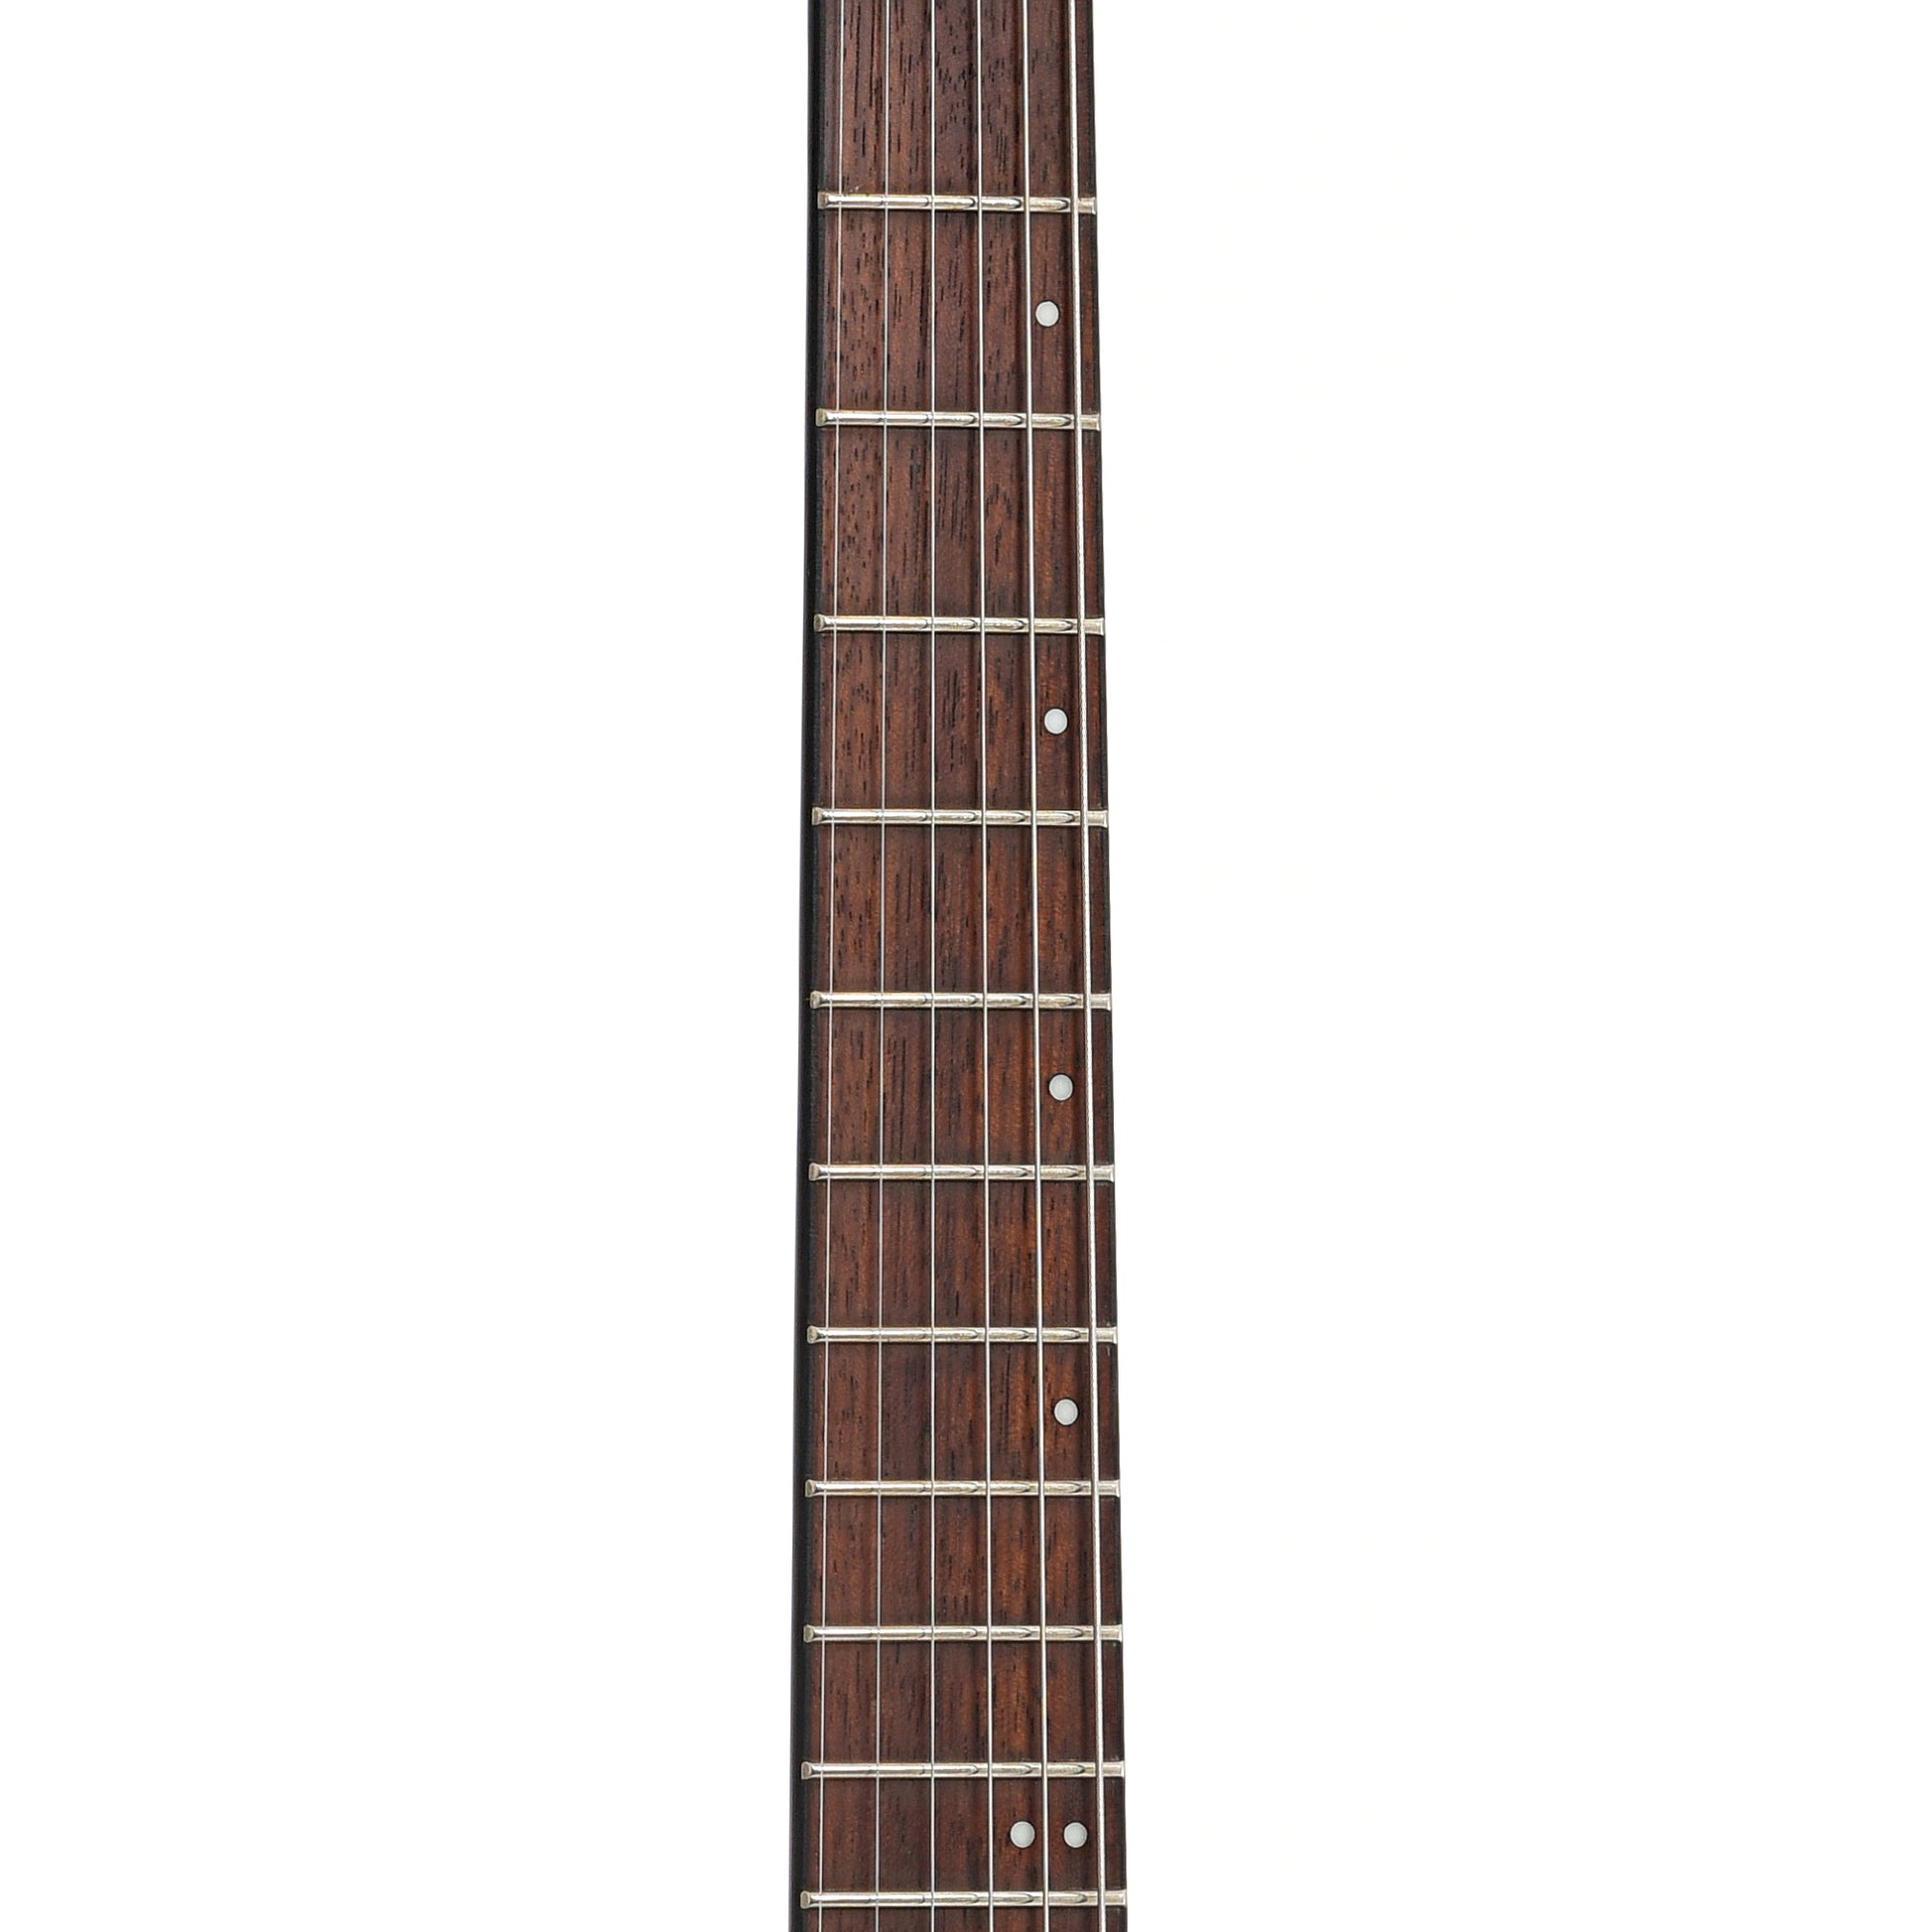 Fretboard of ESP LTD Left Handed M-201HT Electric Guitar, Black Satin